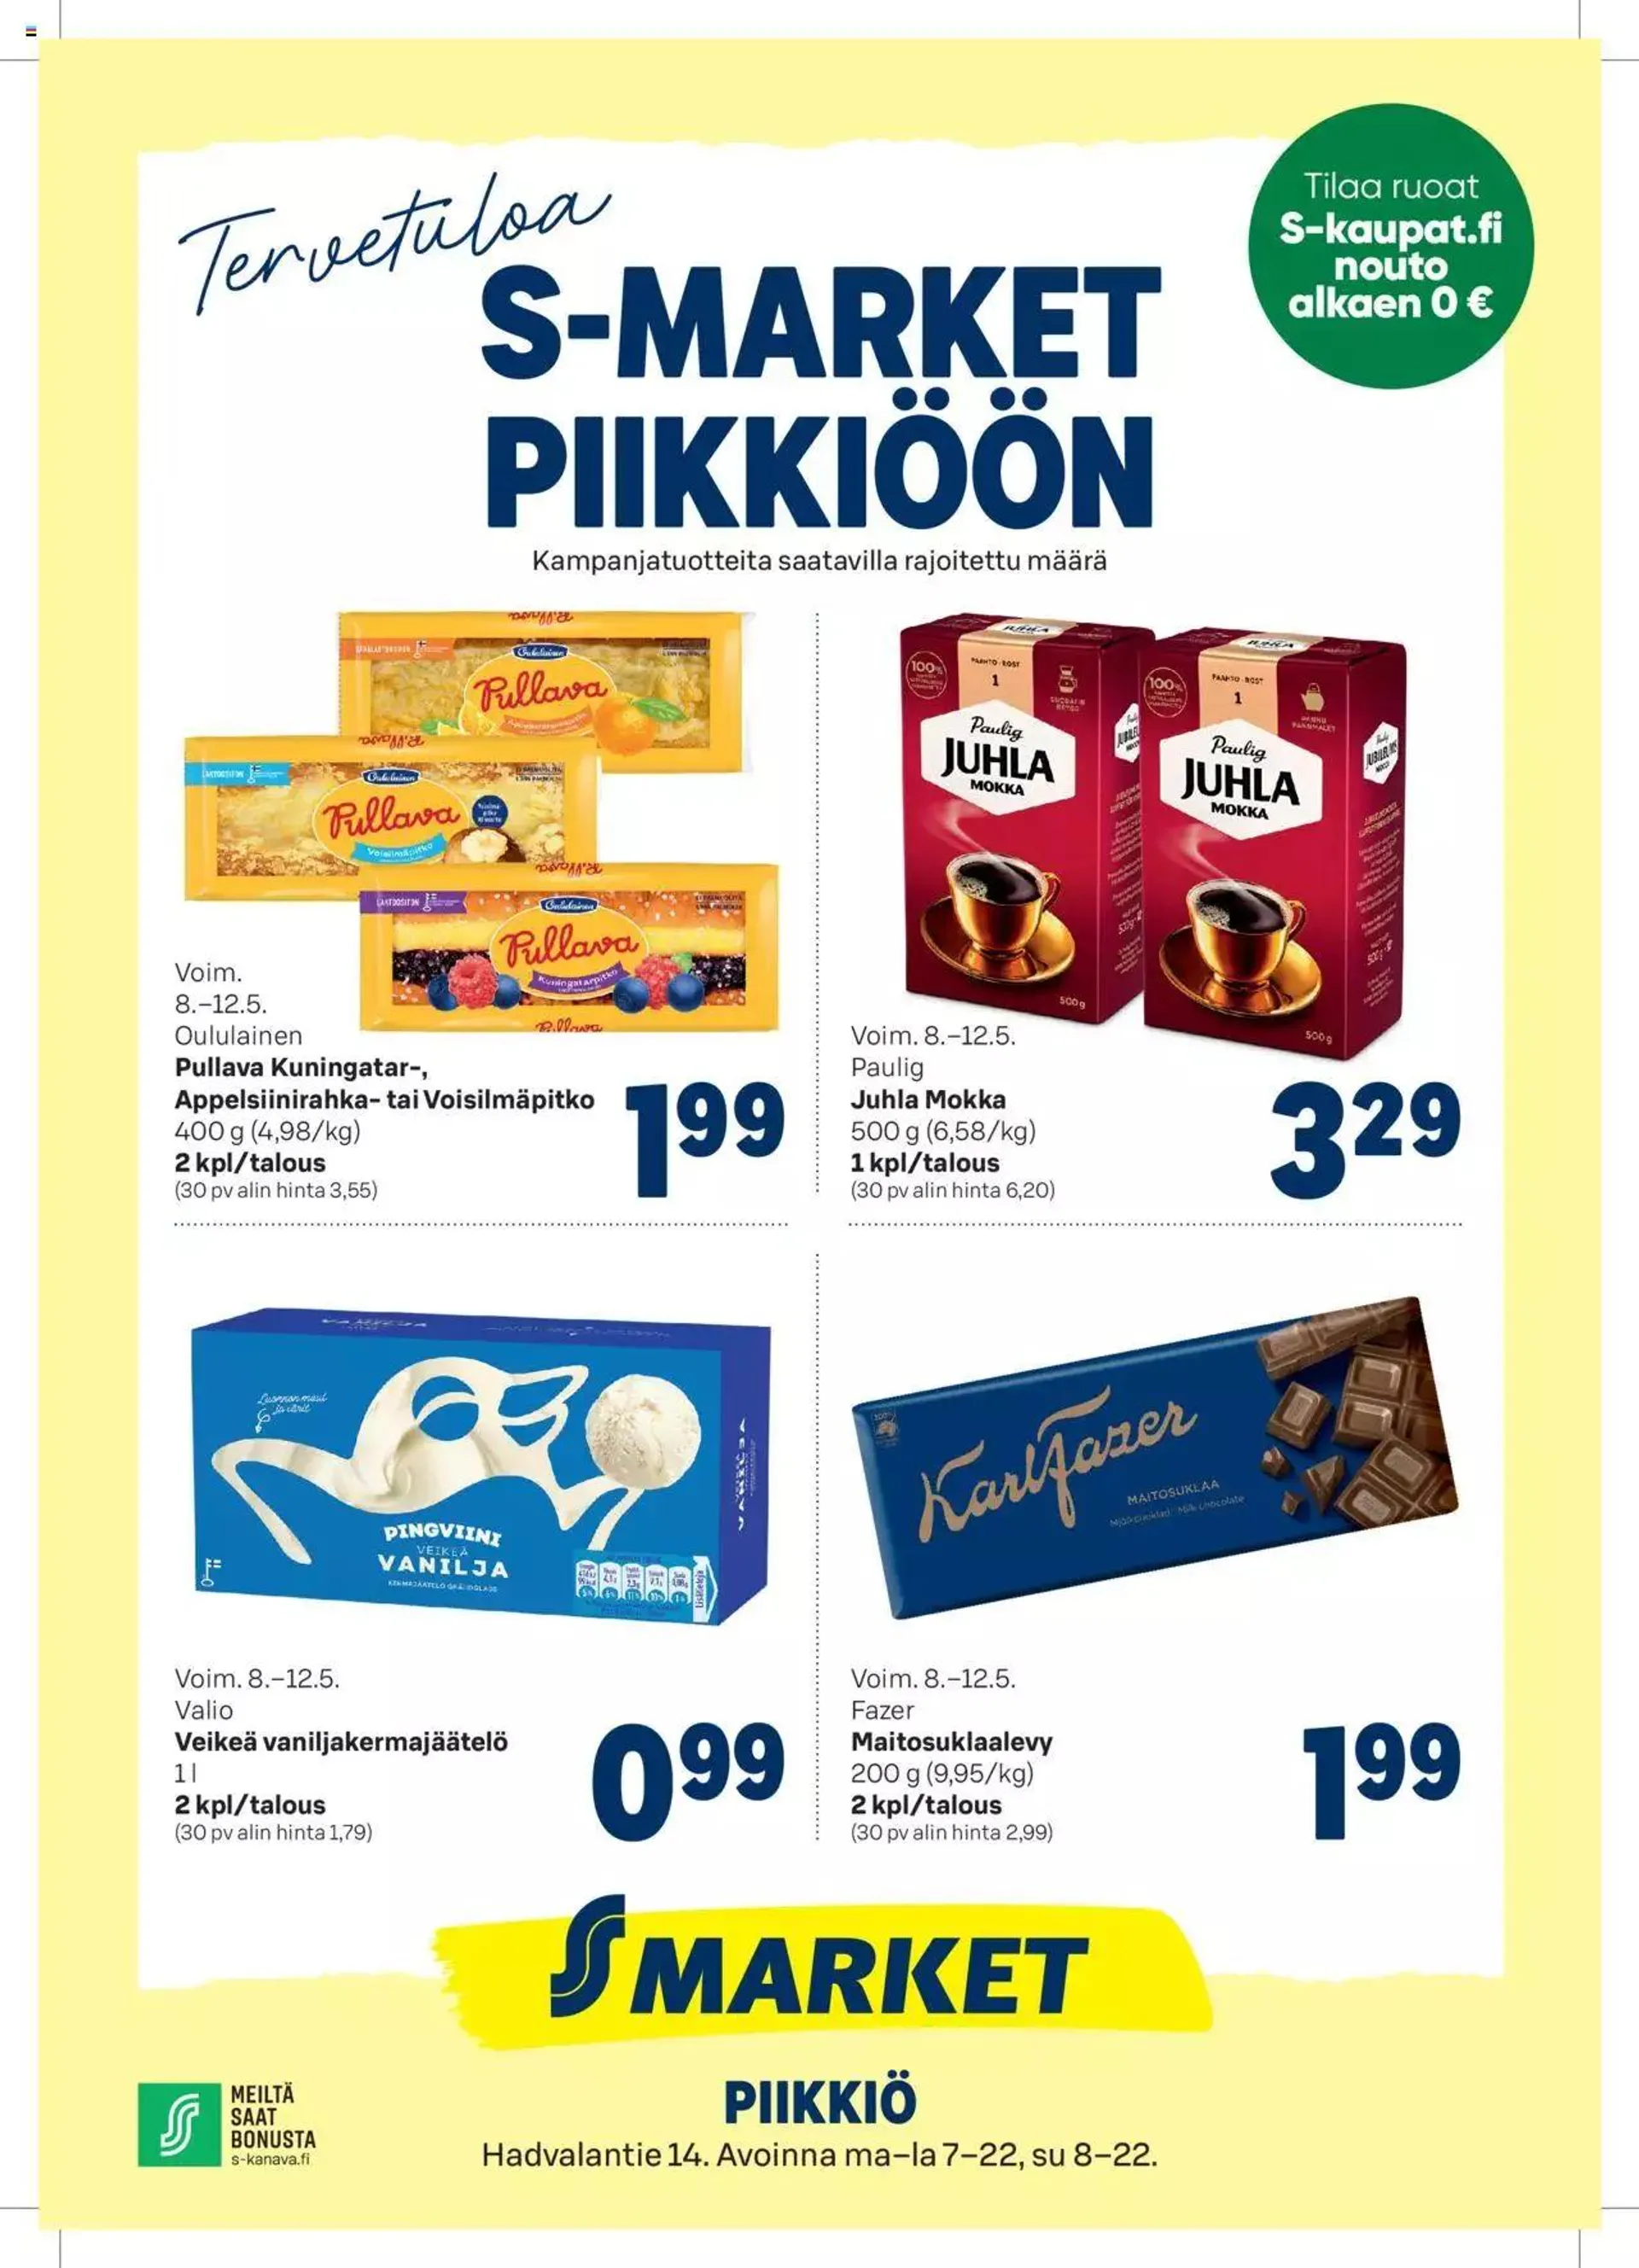 S-market Piikkiöön - 0